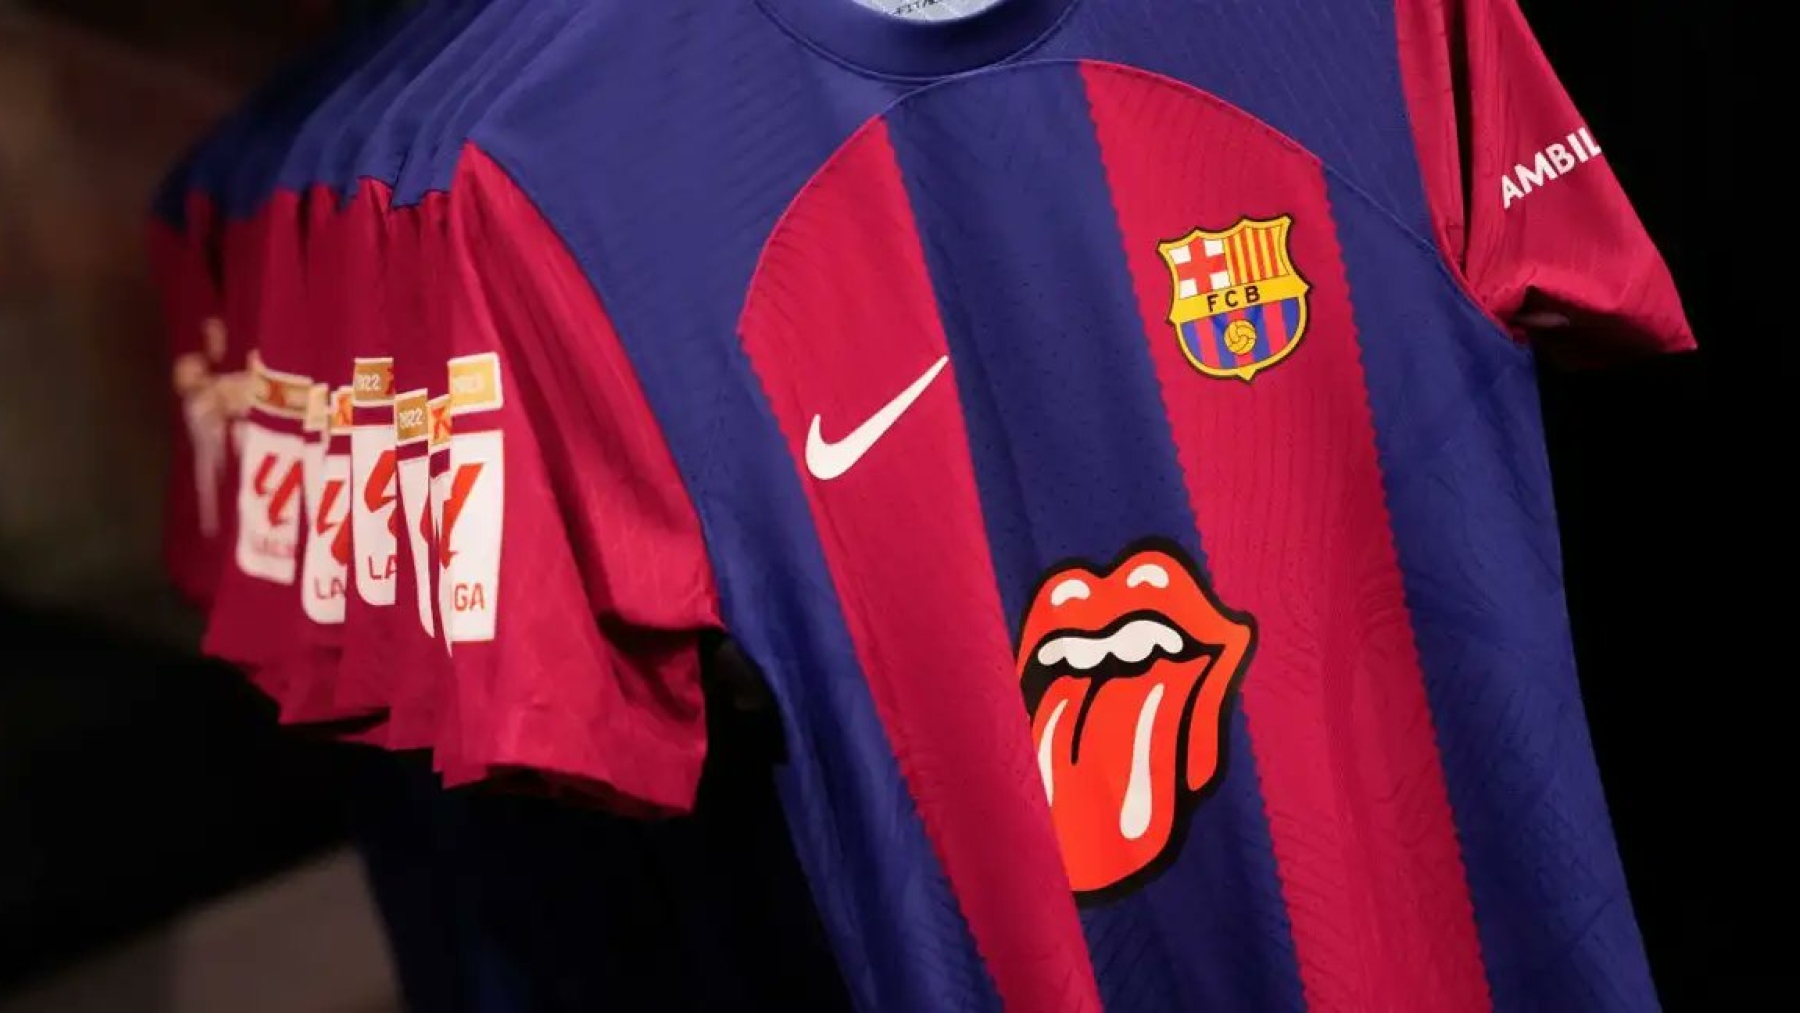 Por qué el Barcelona lleva una camiseta con el símbolo de los